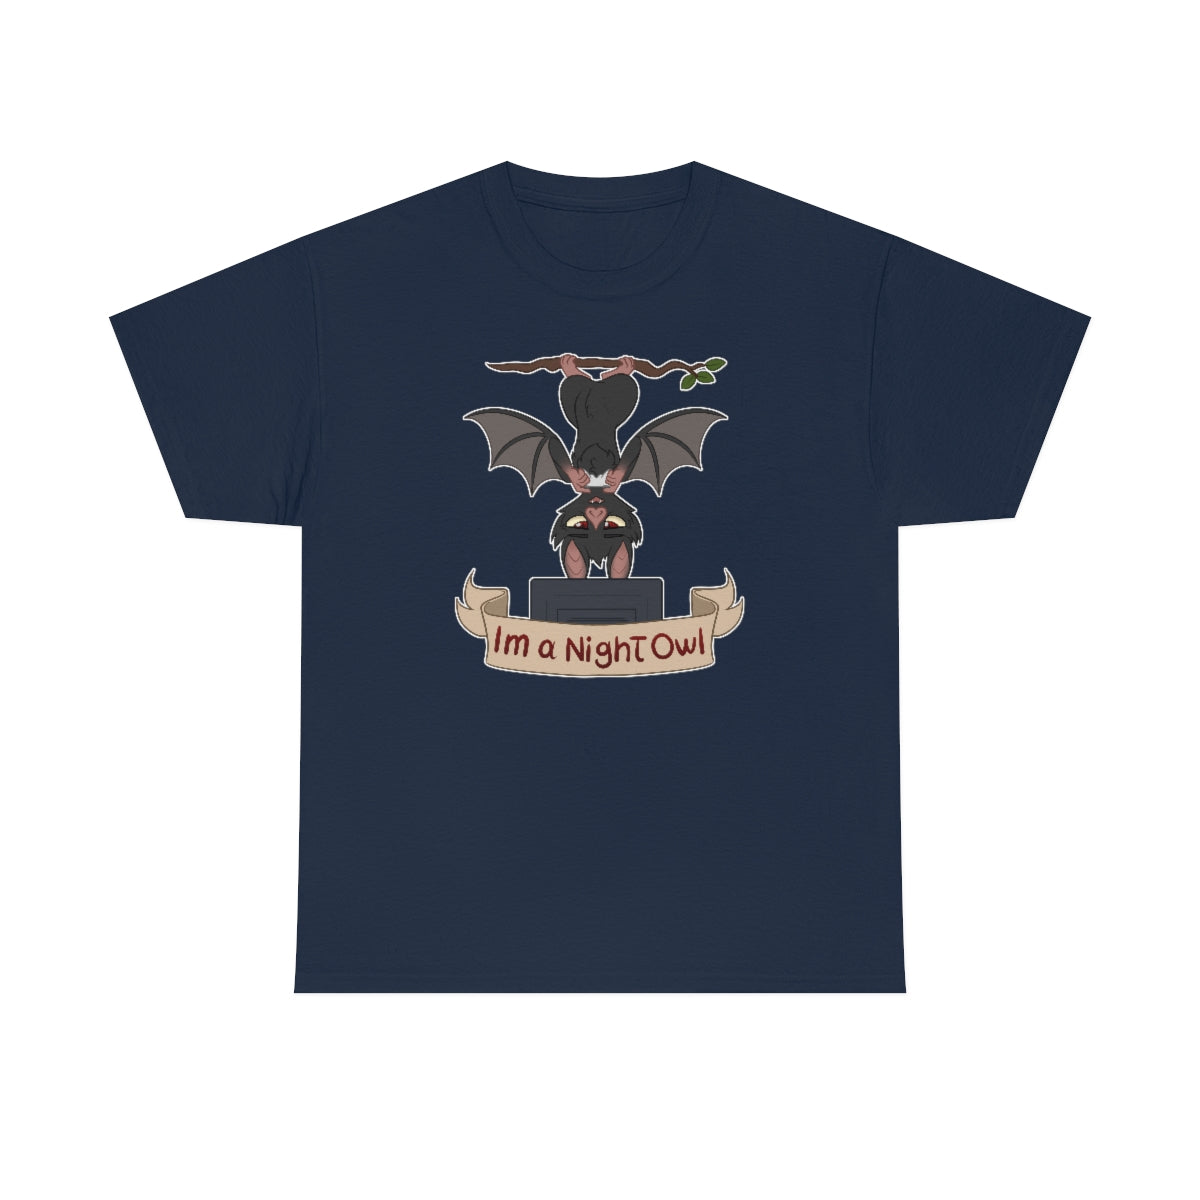 I am a Night Owl - T-Shirt T-Shirt Artworktee Navy Blue S 